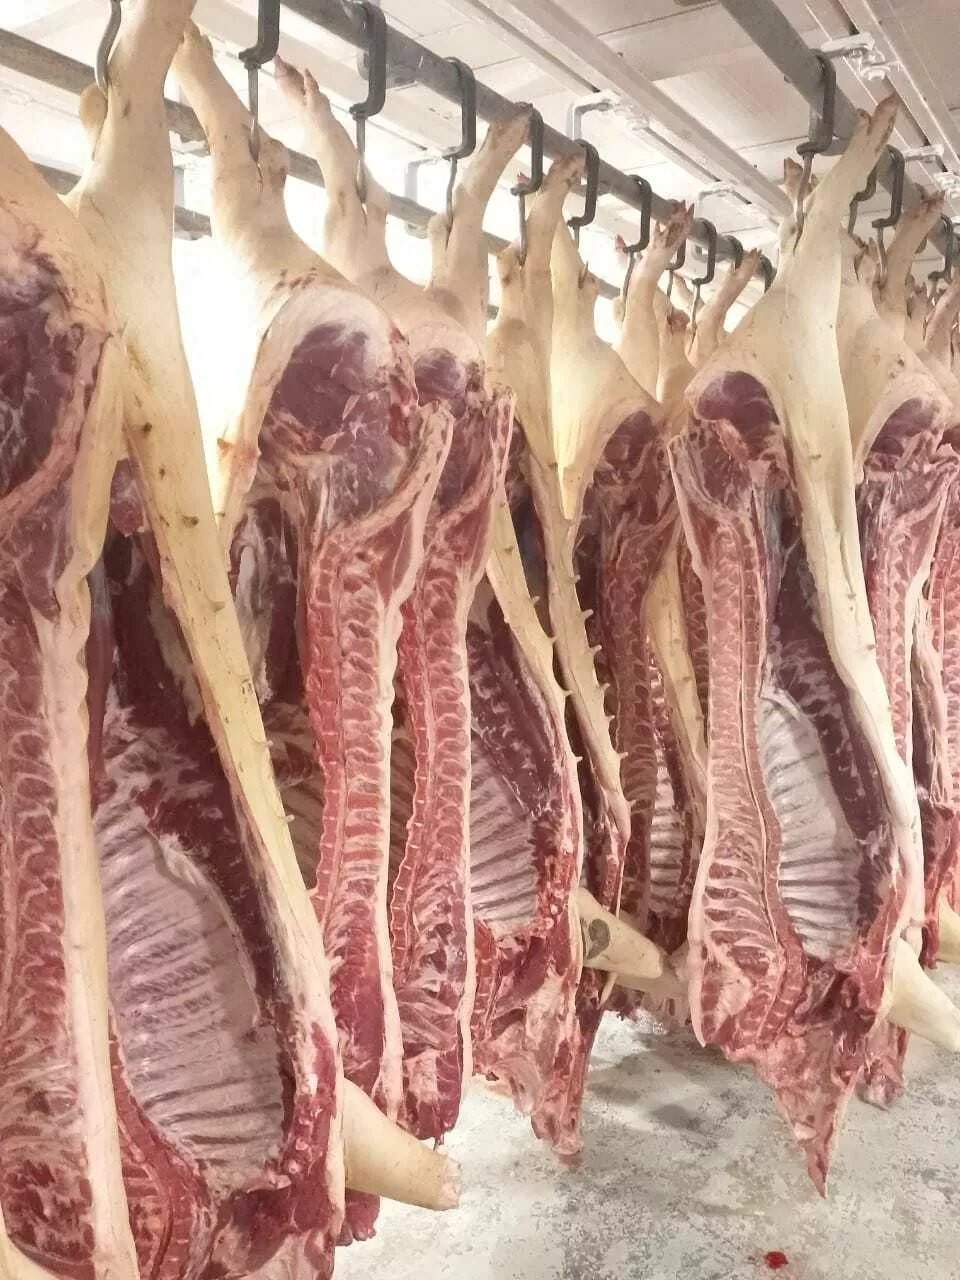 мясо свинины оптом и в розницу в Краснодаре и Краснодарском крае 4